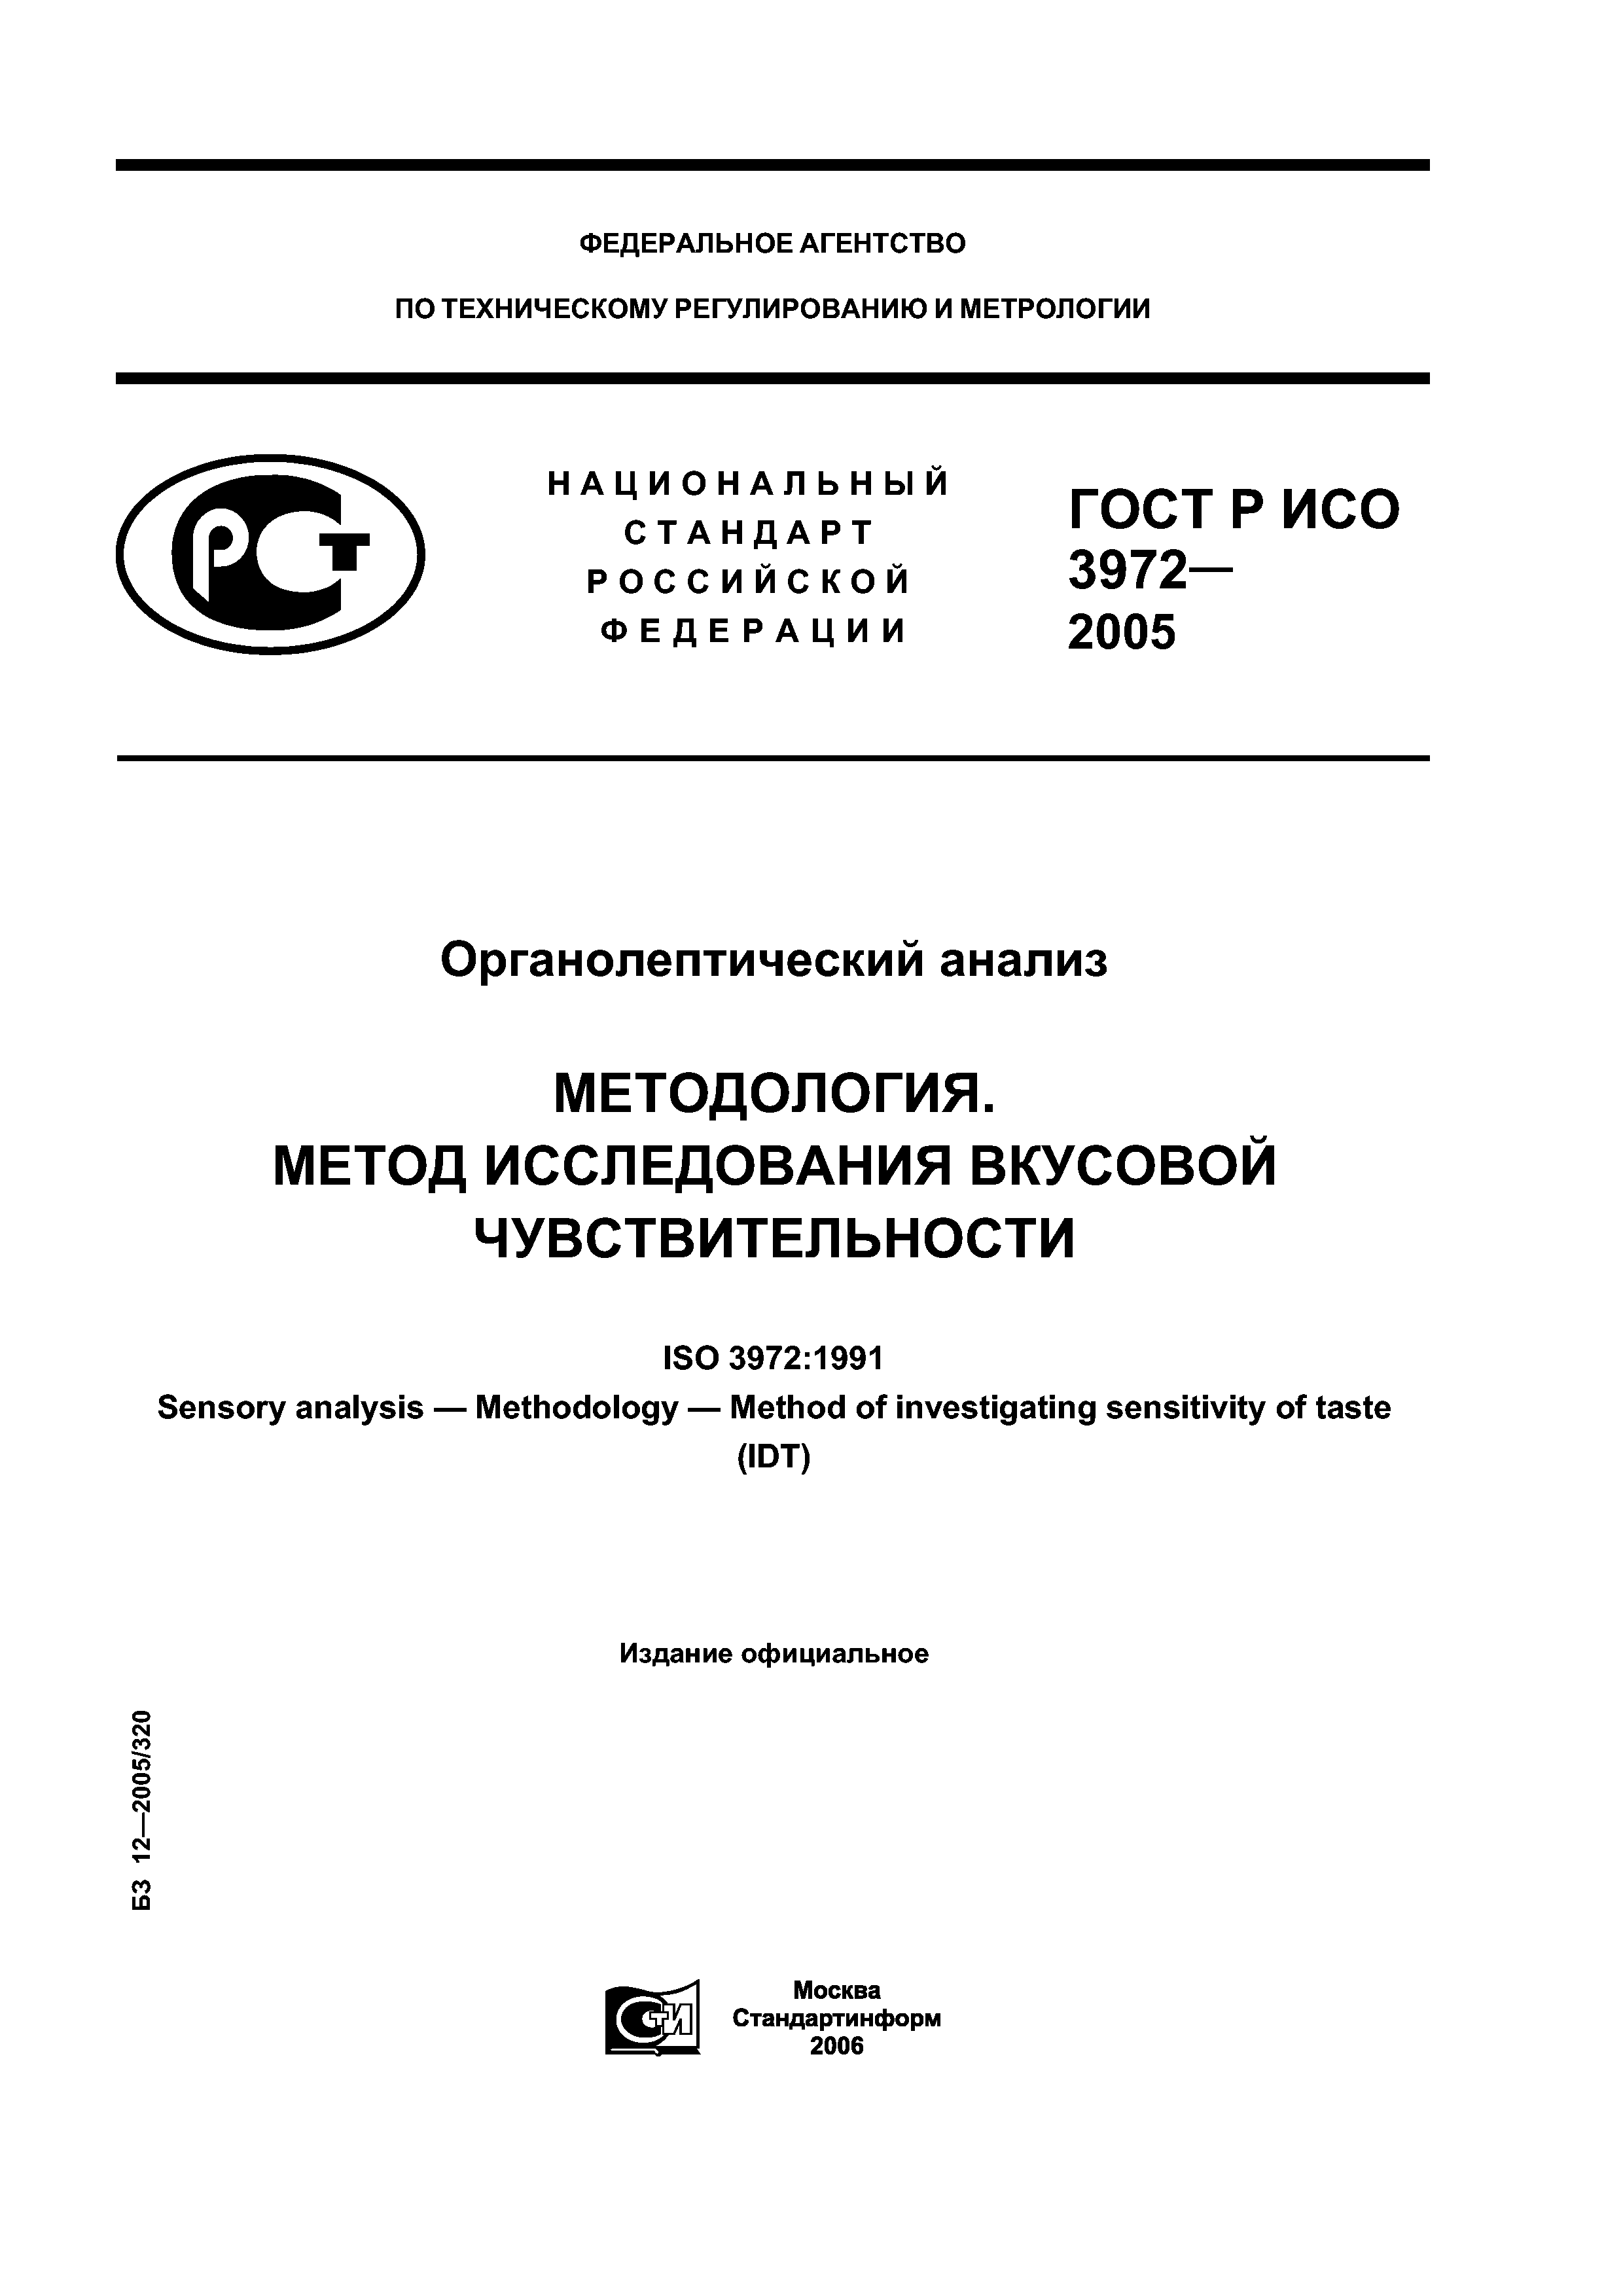 ГОСТ Р ИСО 3972-2005